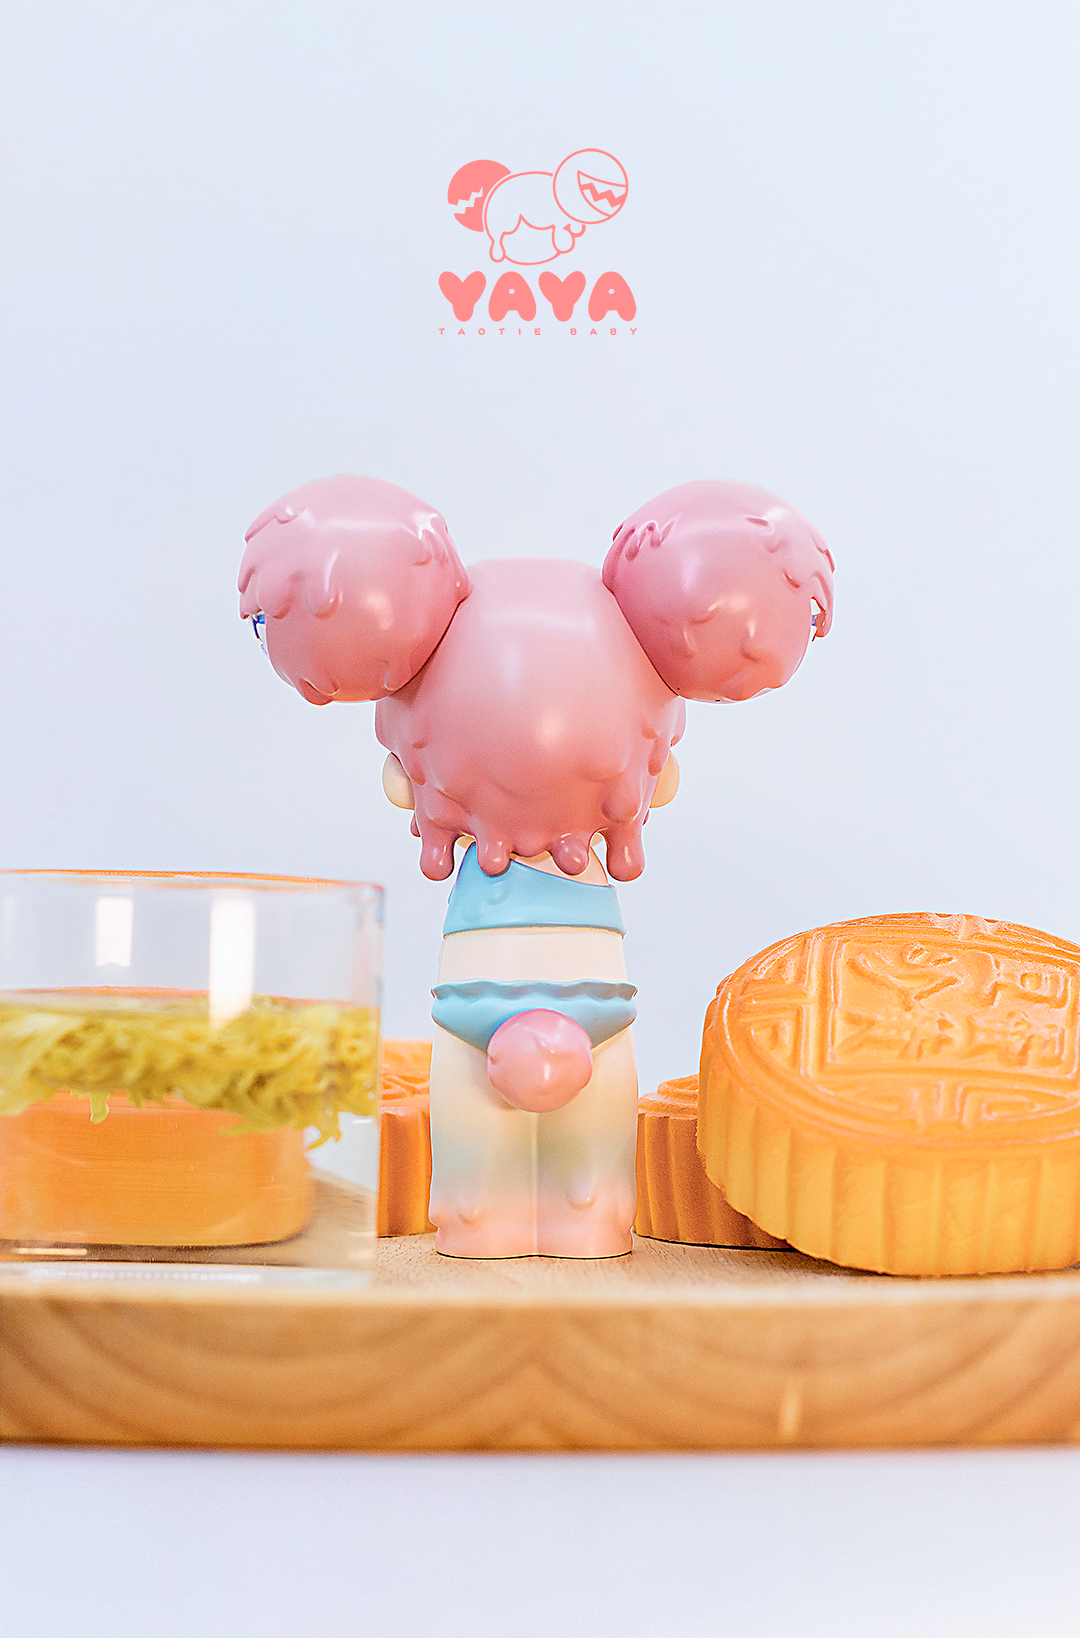 Yaya-Mooncake by MoeDouble2020 x WeArtDoing